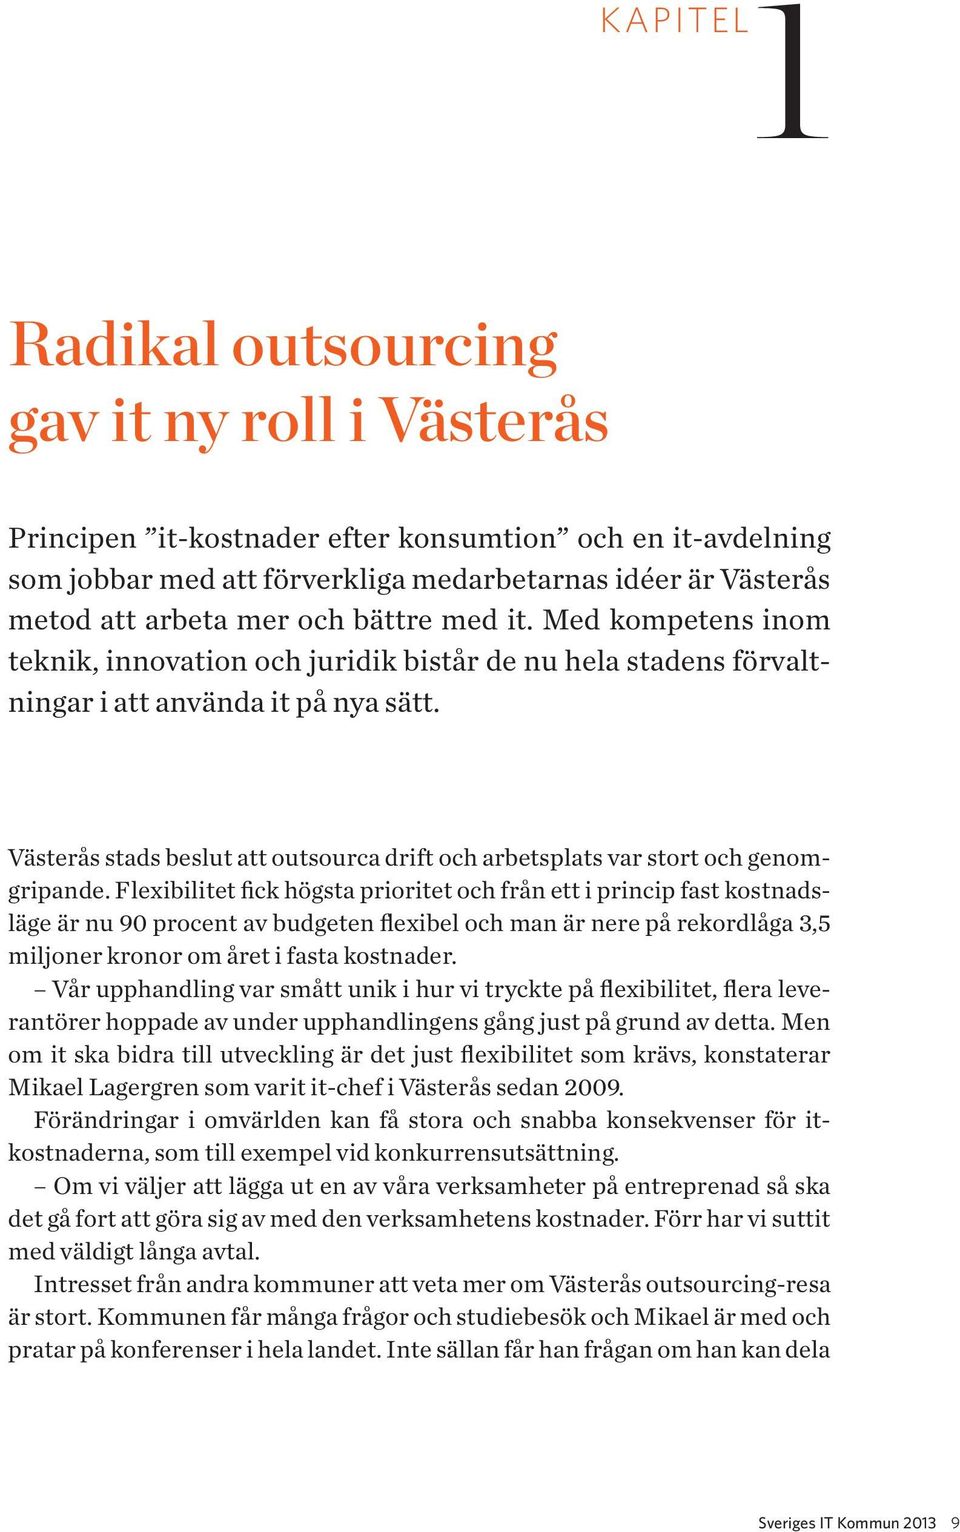 Västerås stads beslut att outsourca drift och arbetsplats var stort och genomgripande.